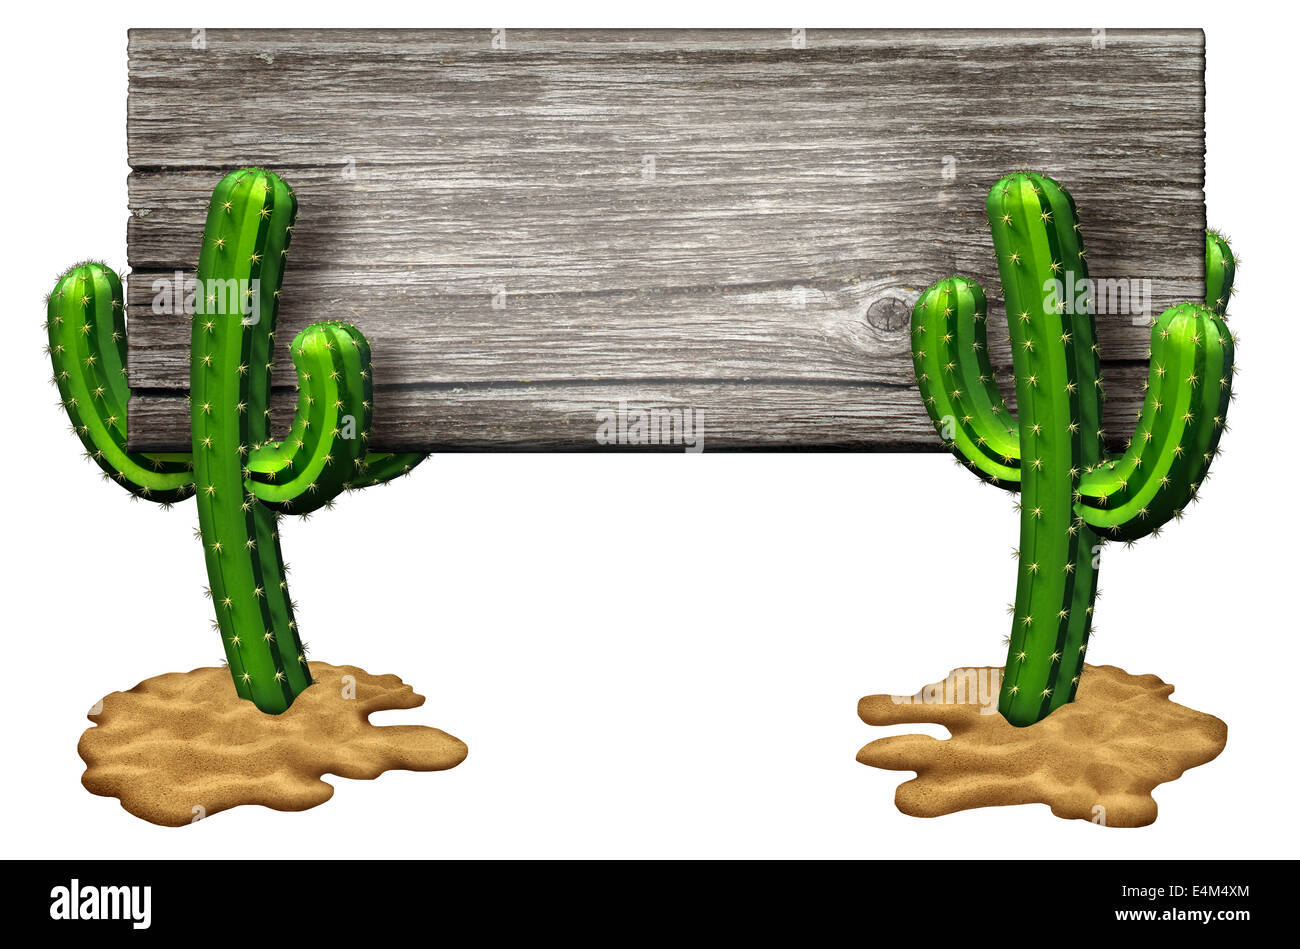 Kaktus melden Sie als zwei Kakteen Pflanzen auf eine Wüste Sandboden hält eine alte rustikale Holz Banner isoliert auf weiss als Marketing und Werbung-Symbol von heißem, trockenen Wetter und trockenen Lebensraum gefunden im südwestlichen Teilen von Nordamerika, Texas und Mexiko. Stockfoto